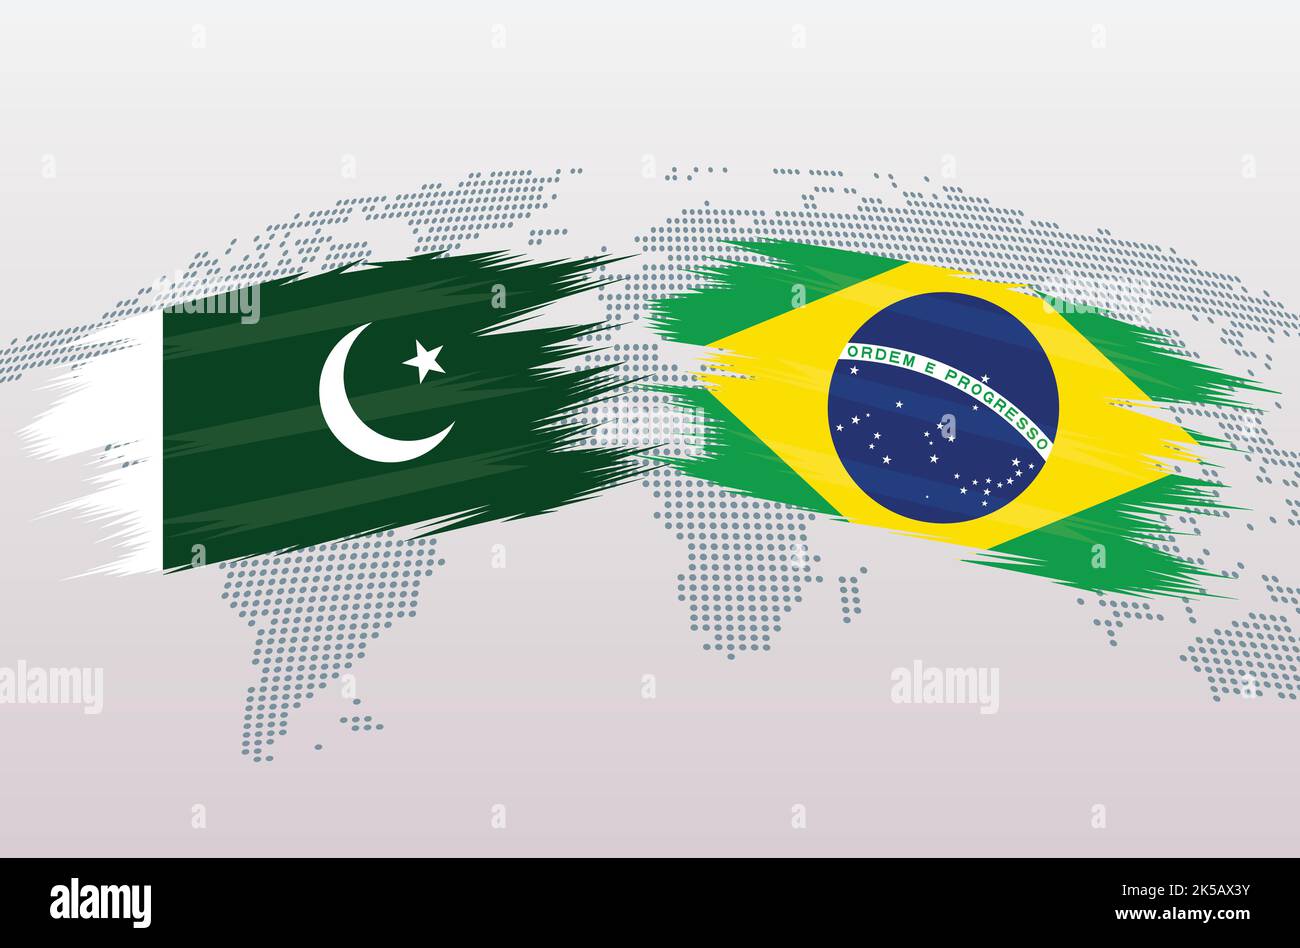 Bandiere Pakistan vs Brasile. Bandiere della Repubblica islamica del Pakistan vs Brasile, isolate su sfondo grigio della mappa del mondo. Illustrazione vettoriale. Illustrazione Vettoriale